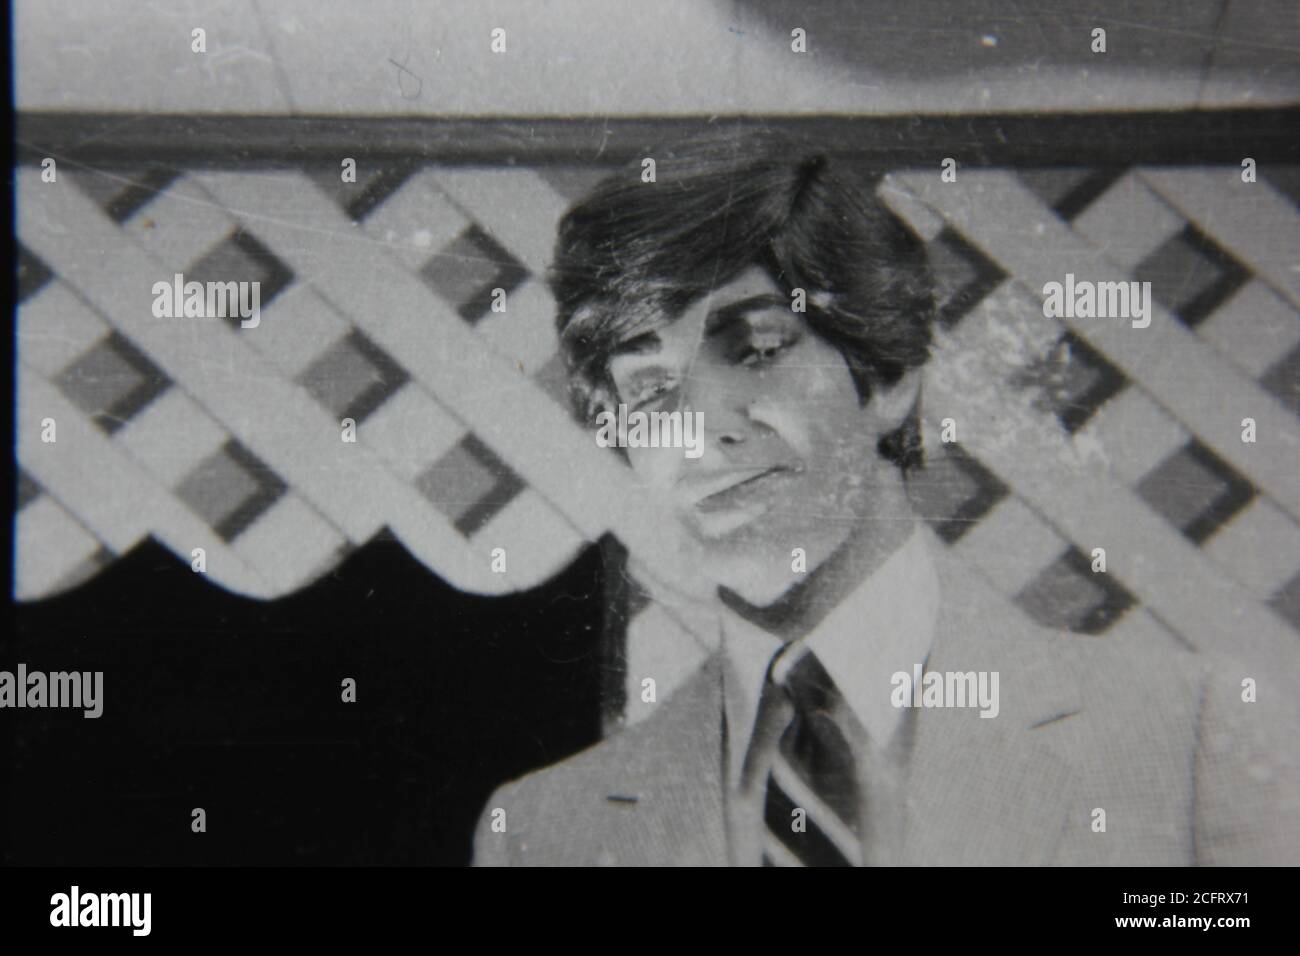 Bella fotografia in bianco e nero d'epoca degli anni '70 di un manichino maschio che sorride alla macchina fotografica. Foto Stock